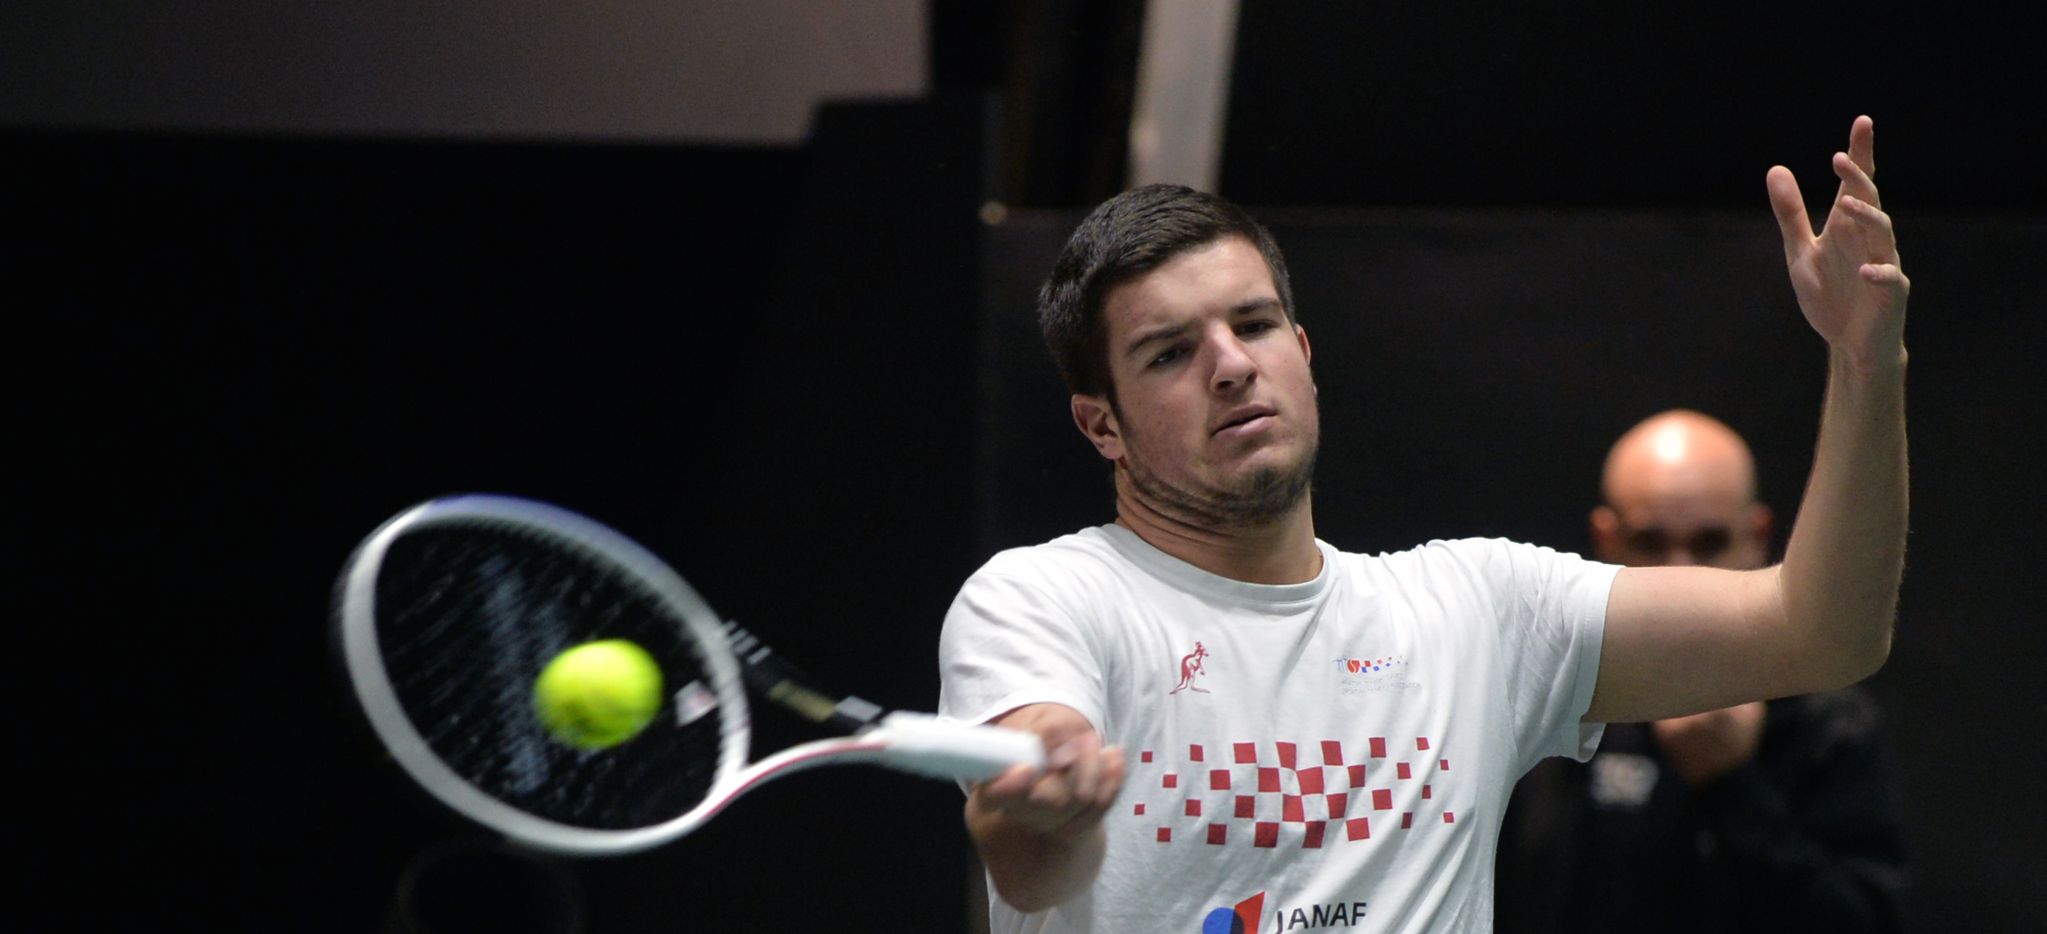 Mili Poljičak u 2. kolu ITF World Tennis Toura u Monastiru, Nikola Bašić izgubio